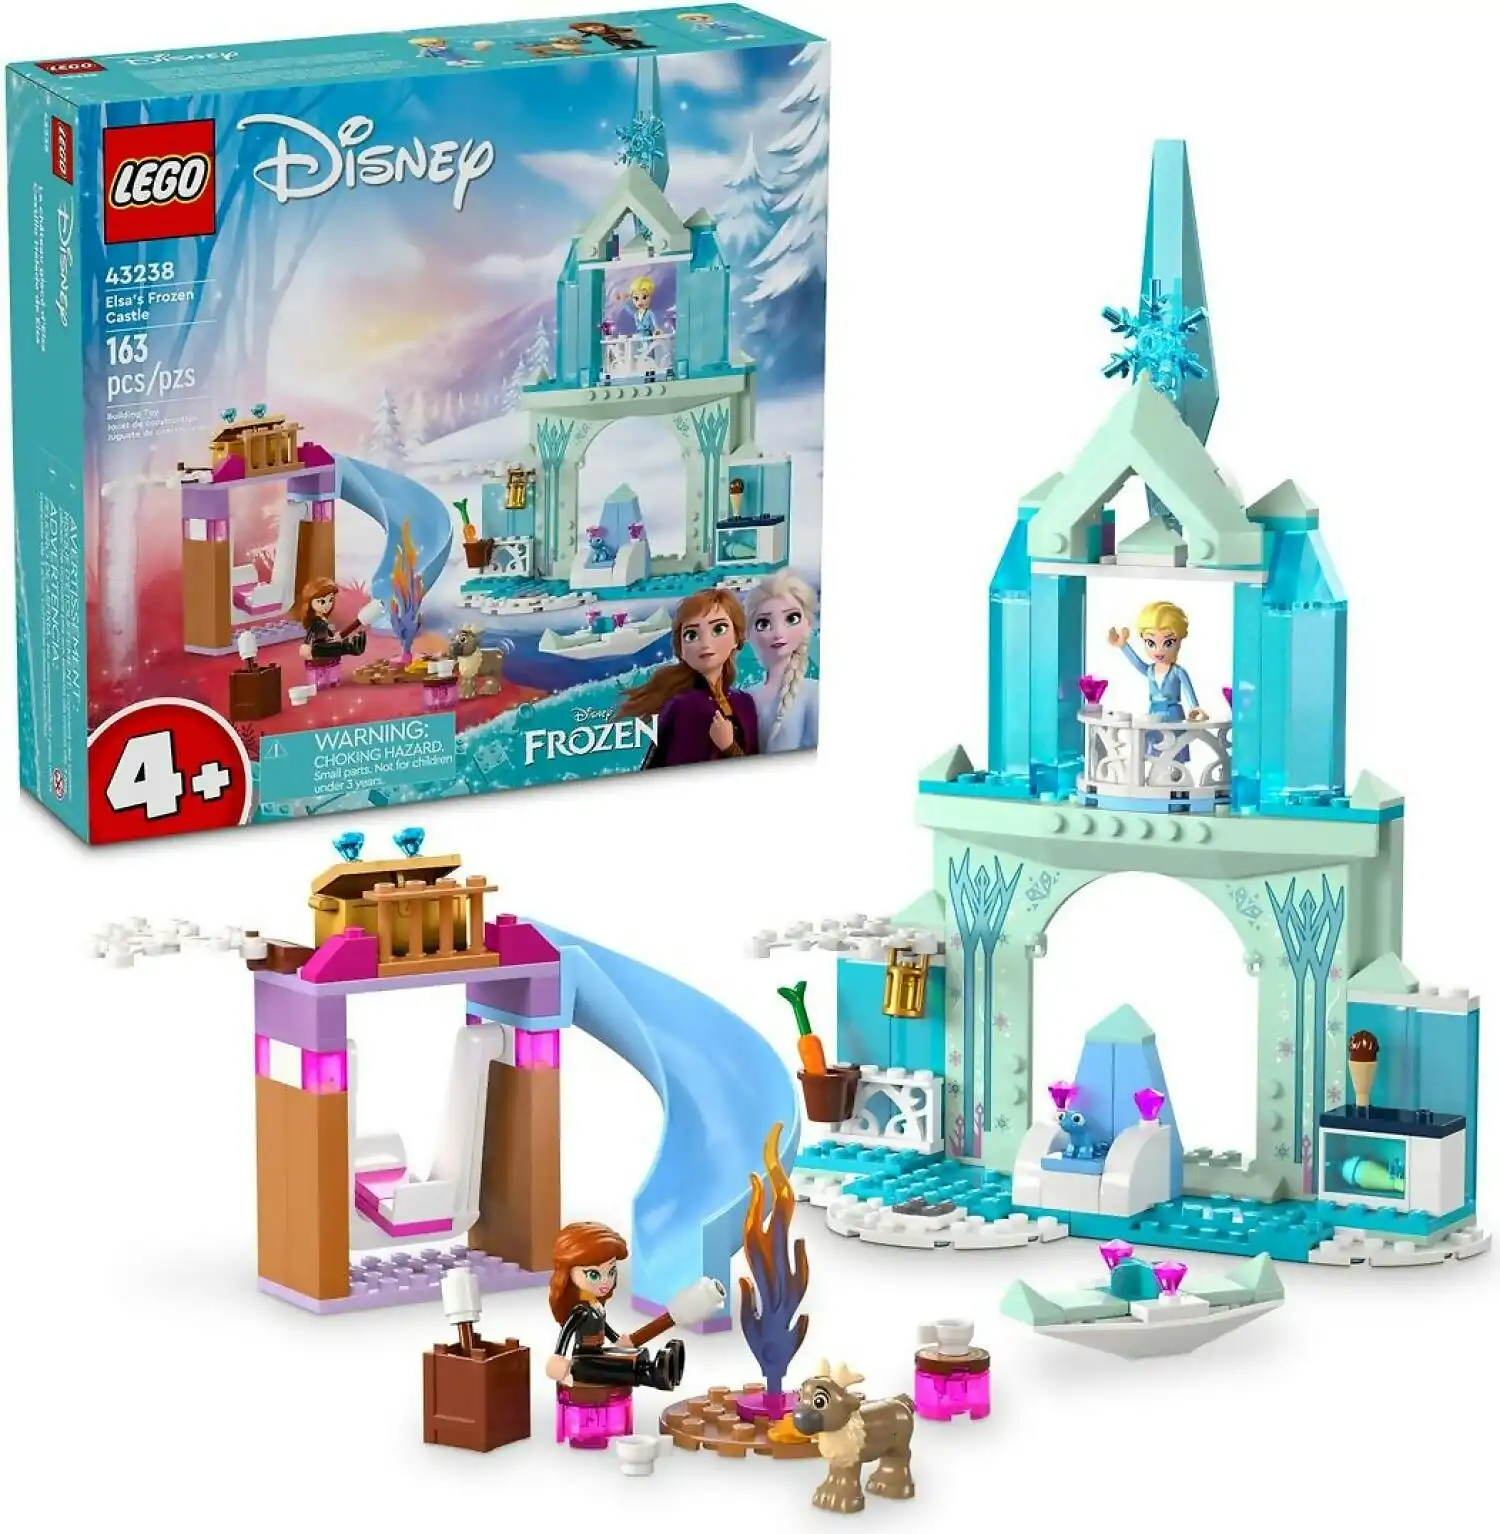 LEGO 43238 Elsa's Frozen Castle - Disney Princess 4+